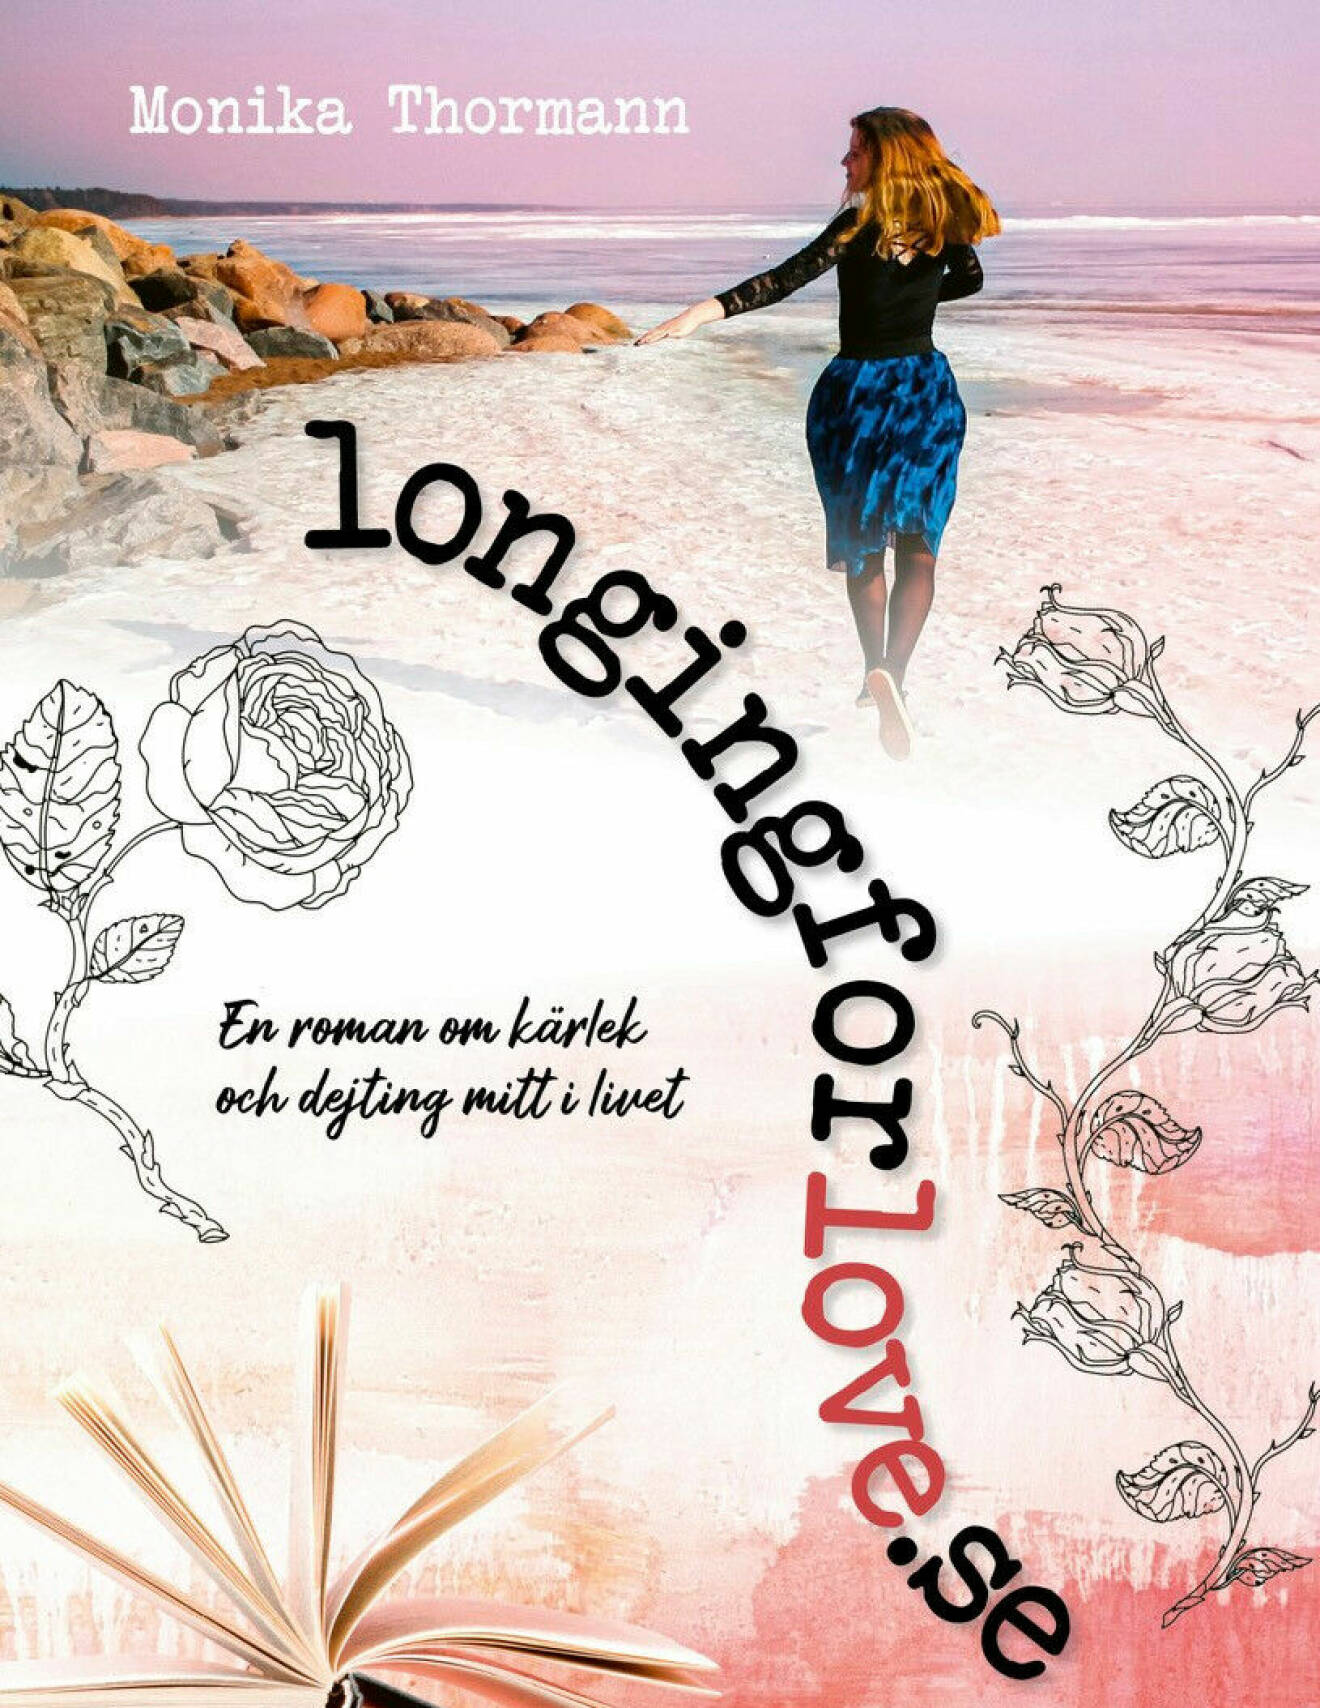 Omslaget på Monika Thormanns roman longinforlove.se.